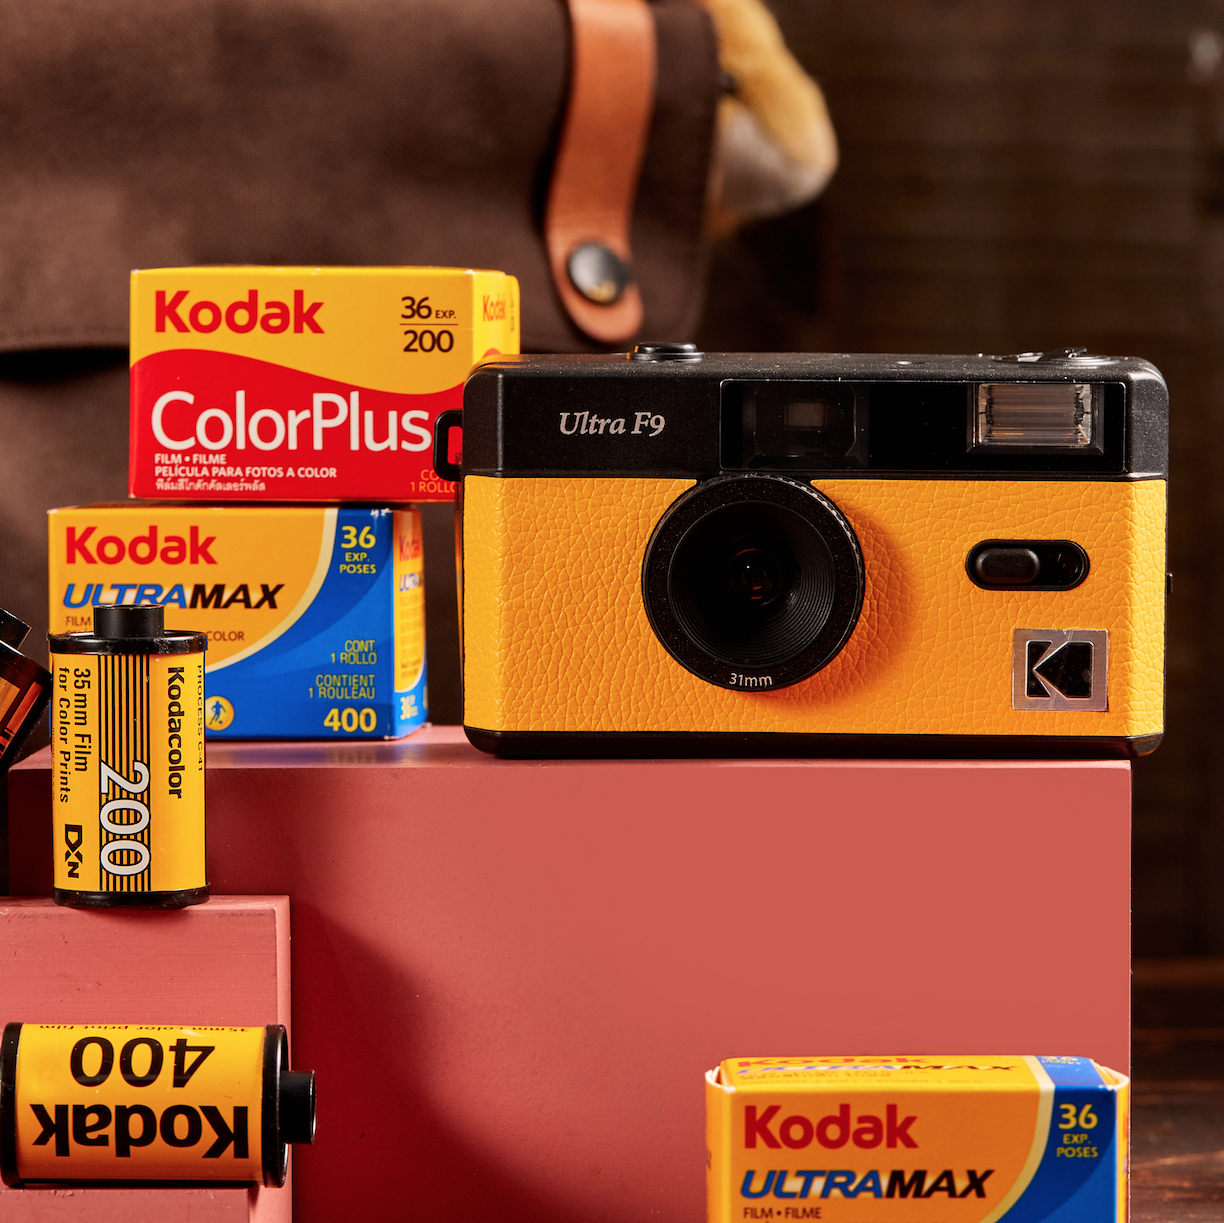 Kodak Film Camera Ultra F9